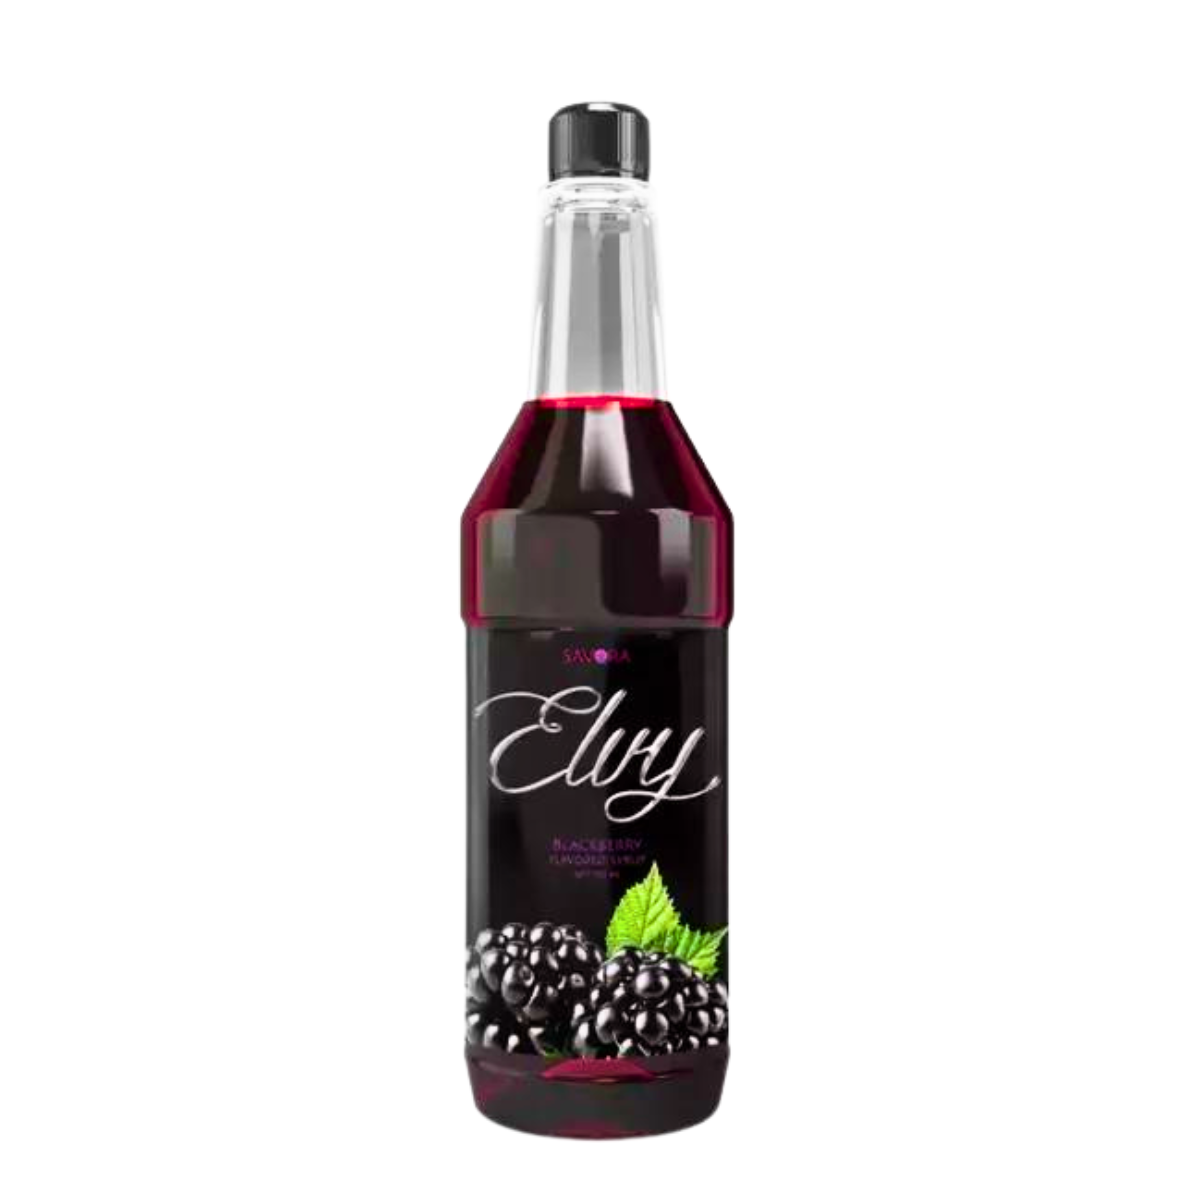 Savora Elvy Blackberryl Flavour Syrup 750ml